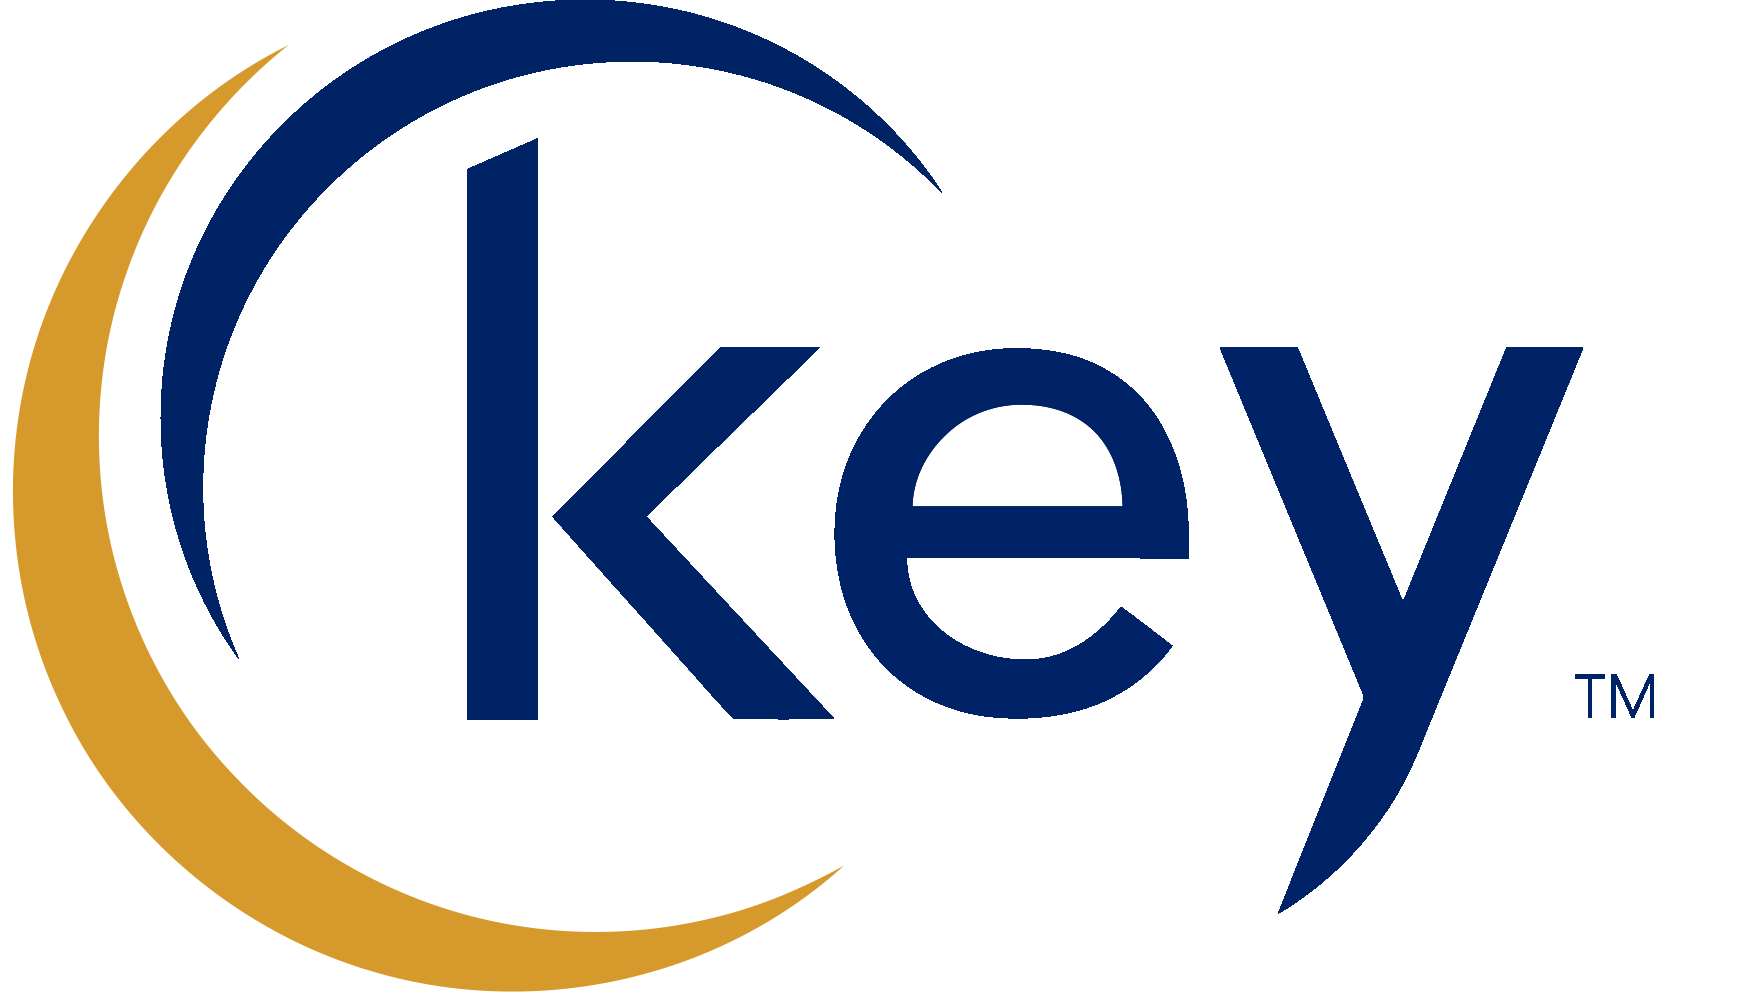 Key logo. TRADEKEY лого. English Test логотип. Ket логотип.